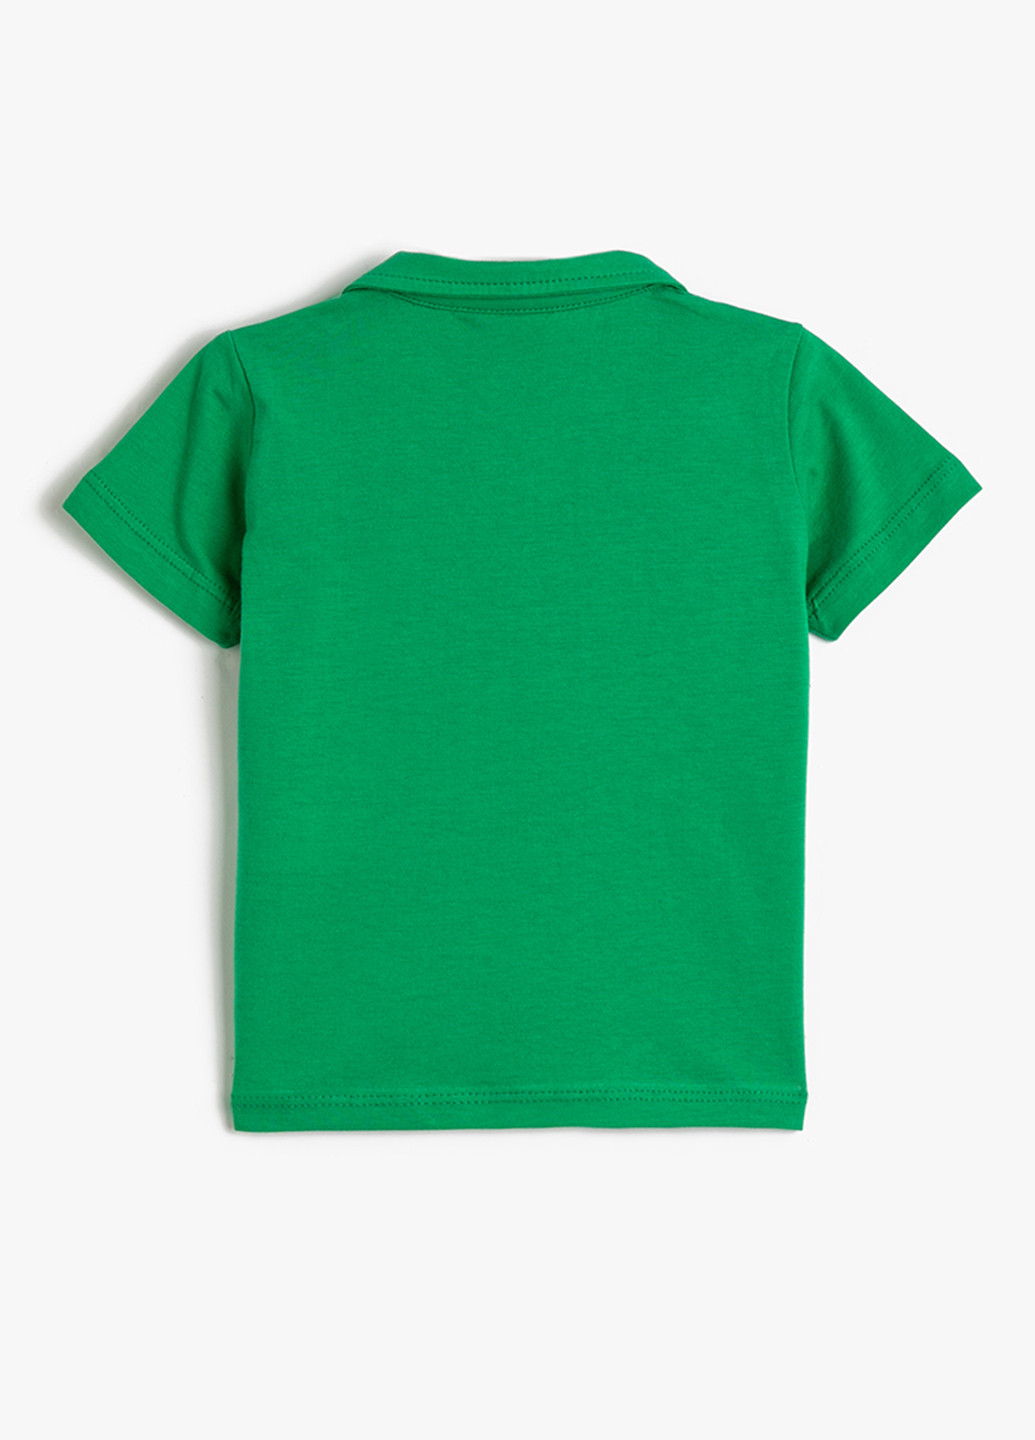 Зеленая детская футболка-поло для мальчика KOTON с рисунком